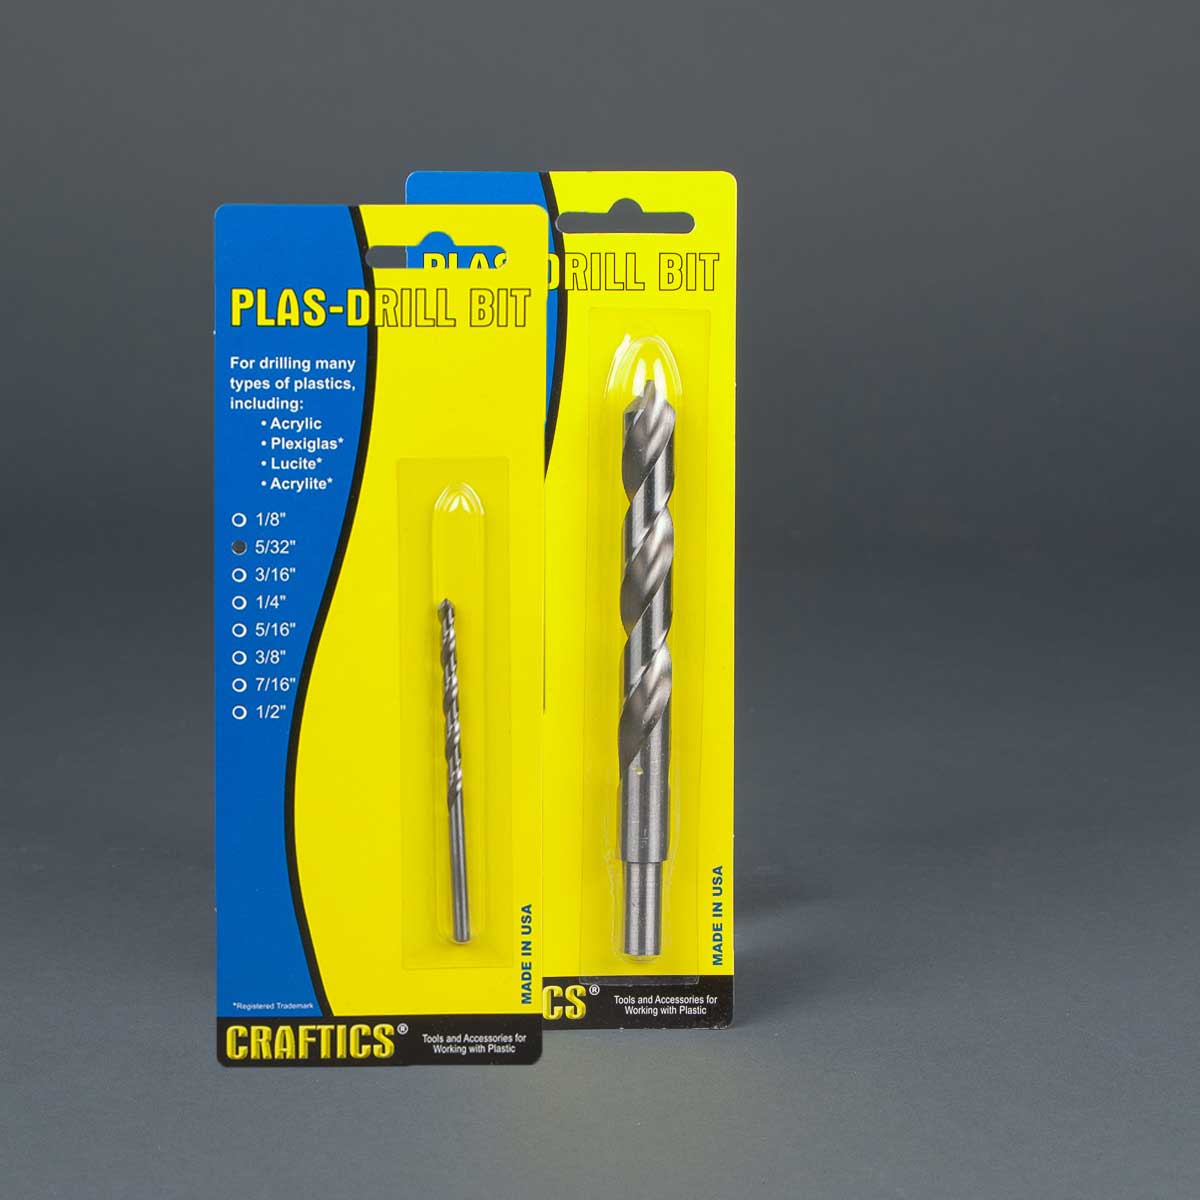 Craftics Plas-drill drill bits for plastic